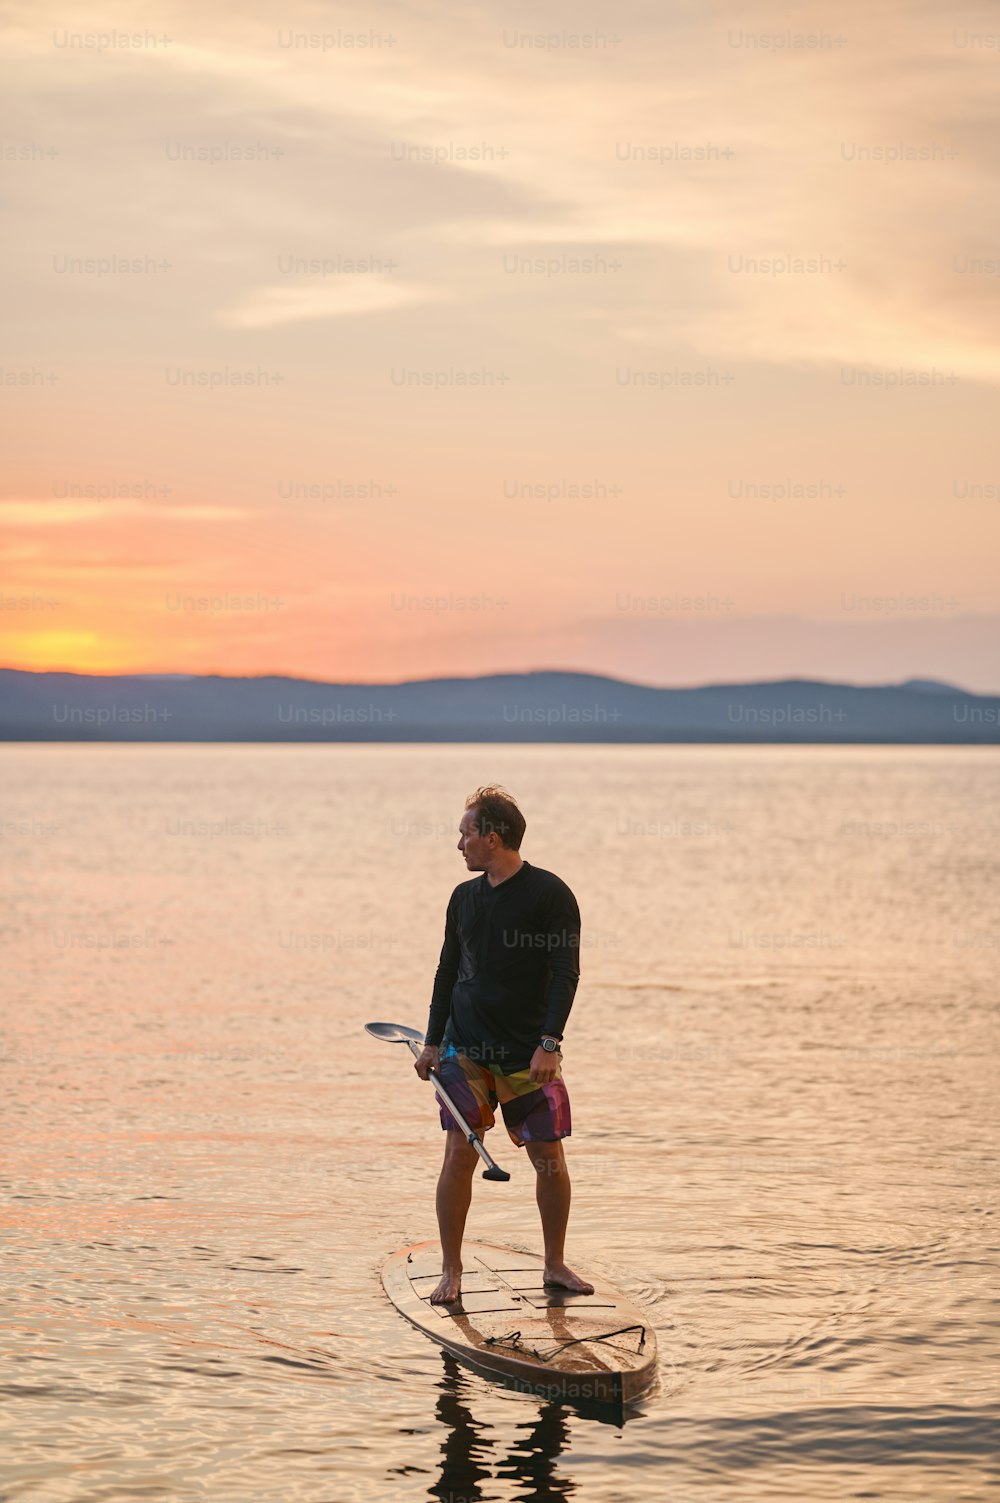 Ganzkörperaufnahme eines Mannes mit Paddel, der auf Holzbrett in ruhigem Wasser steht, bei Sonnenuntergang mit malerischem Bergblick surft, wegschaut